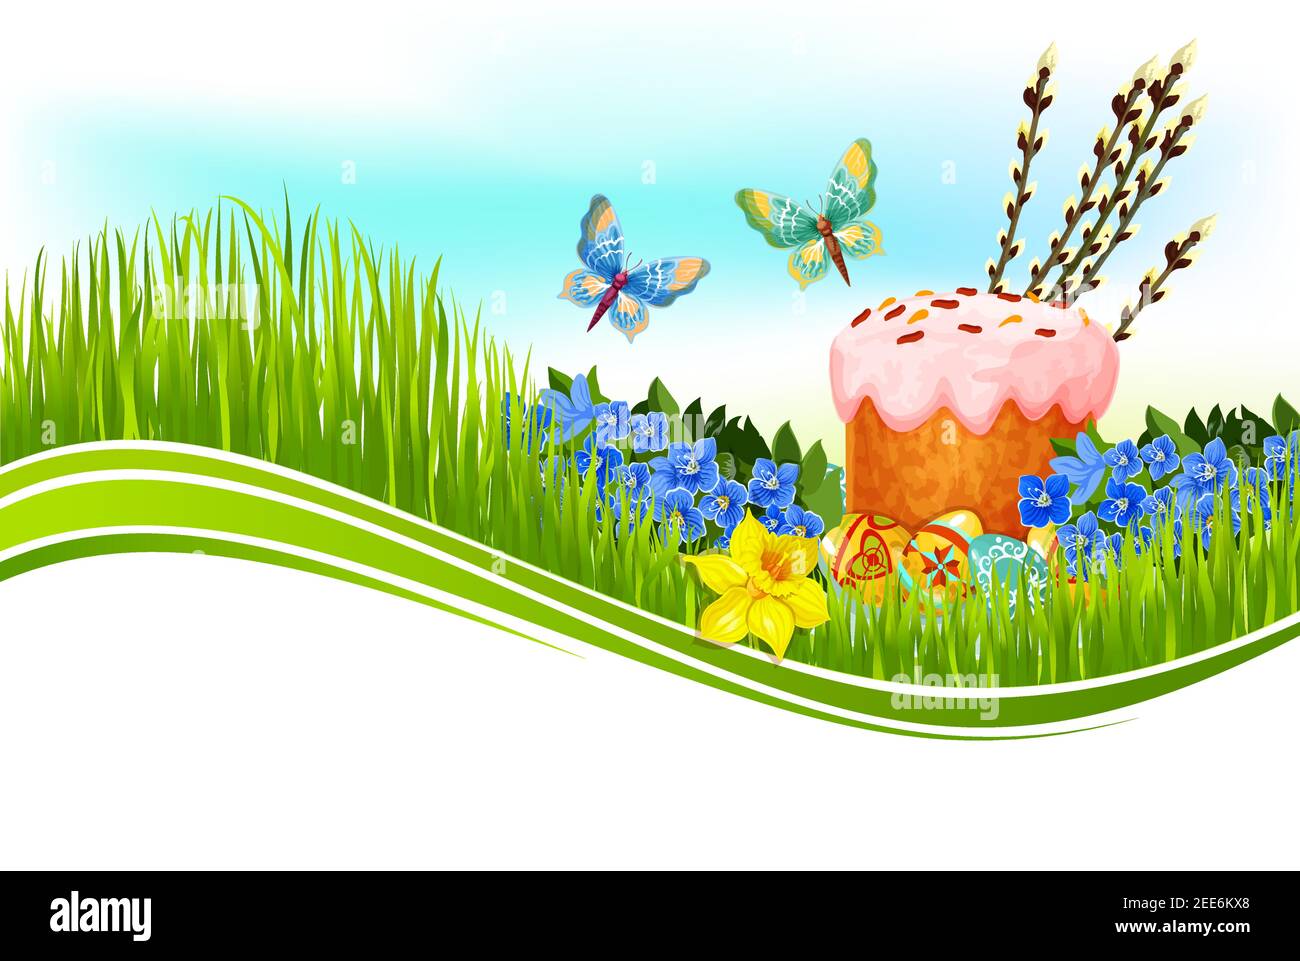 Tarta de Pascua y banner de saludo de huevo. Huevo de Pascua pintado y pan dulce en prado verde de hierba con flores de narciso y Forget-me-not, ramita de sauce Ilustración del Vector